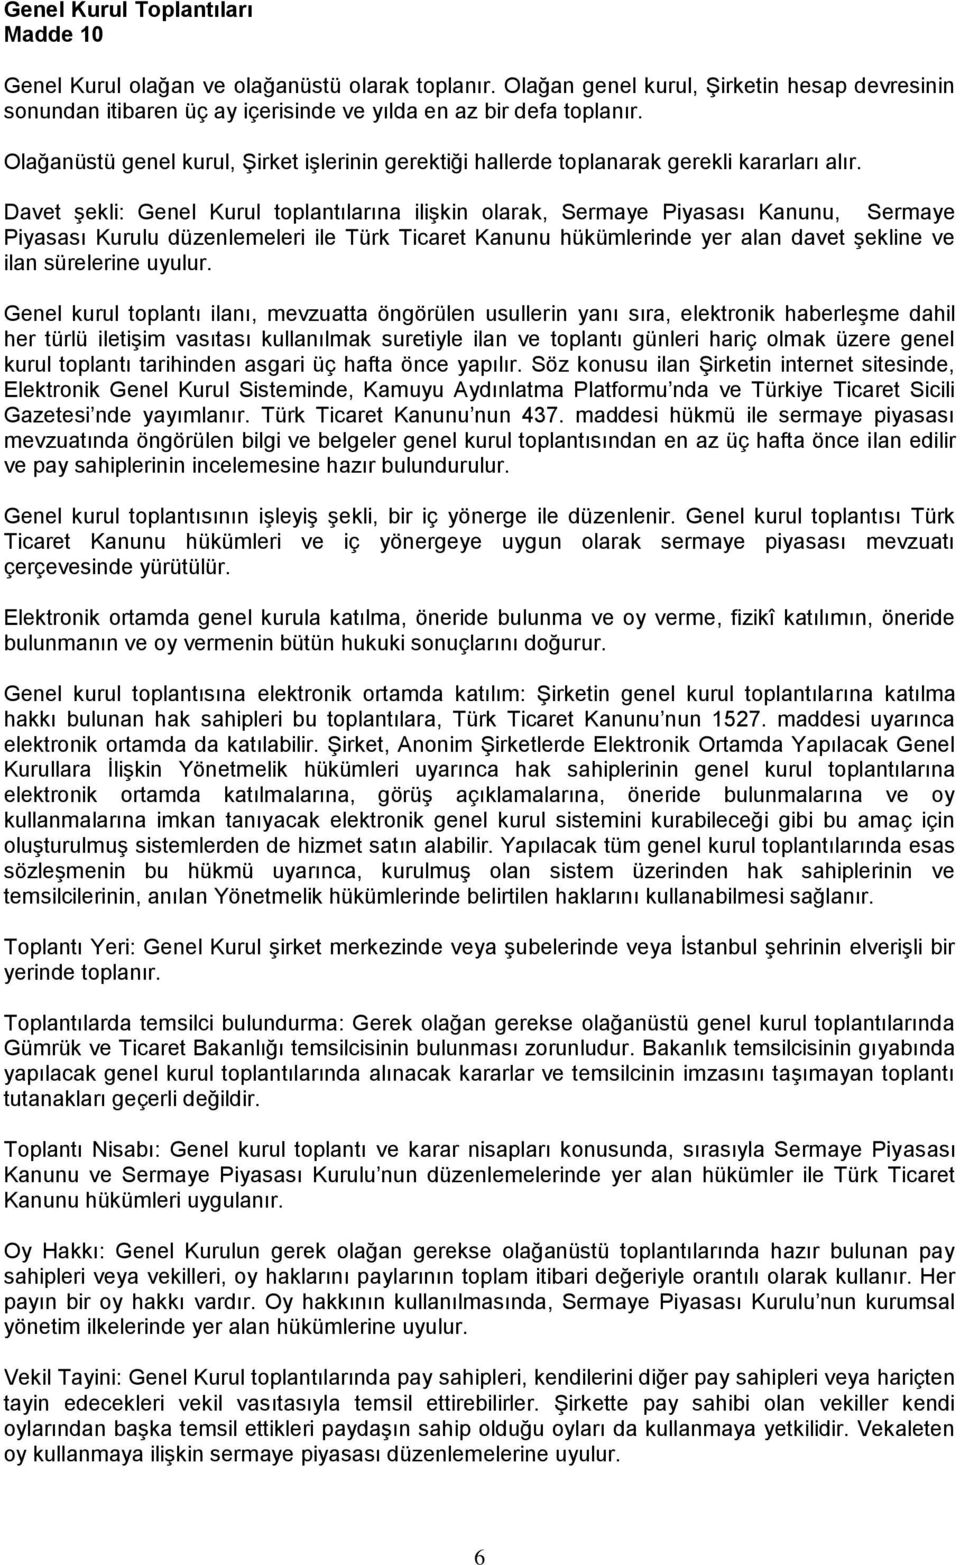 Davet şekli: Genel Kurul toplantılarına ilişkin olarak, Sermaye Piyasası Kanunu, Sermaye Piyasası Kurulu düzenlemeleri ile Türk Ticaret Kanunu hükümlerinde yer alan davet şekline ve ilan sürelerine